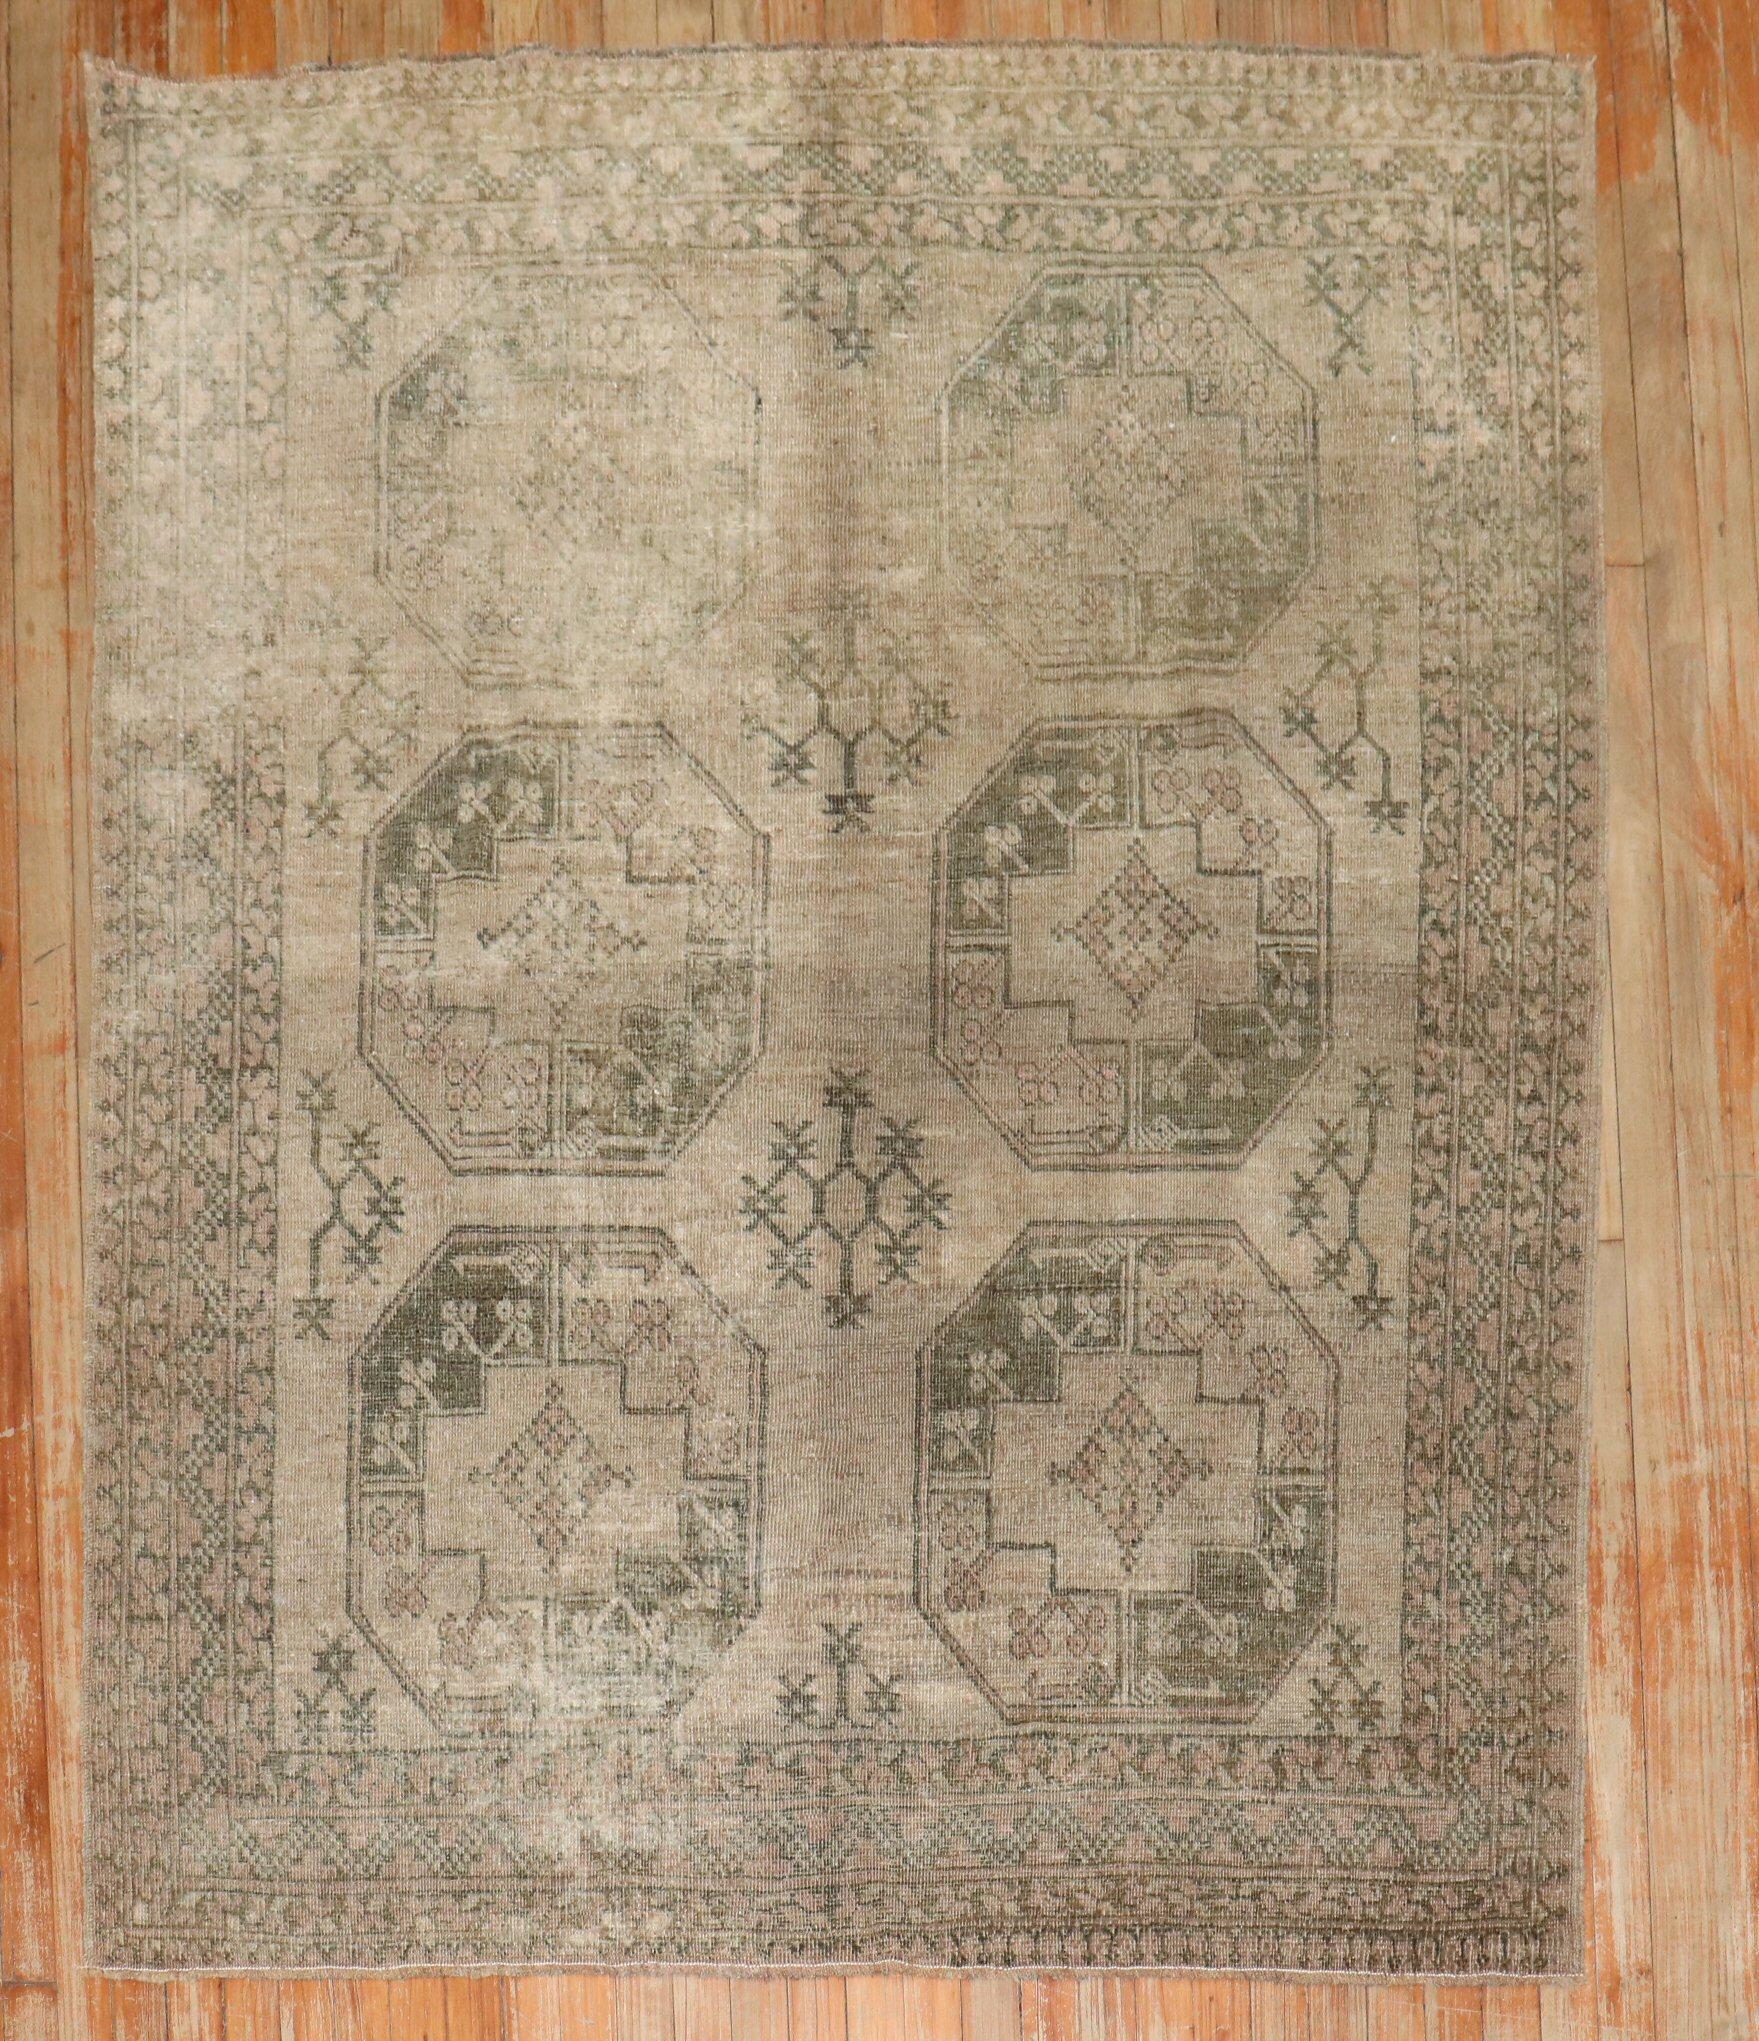 Tapis afghan Ersari de taille carrée très décoratif à motif tribal all-over du 1er quart du 20e siècle.

Mesures : 5'1'' x 6'3''.